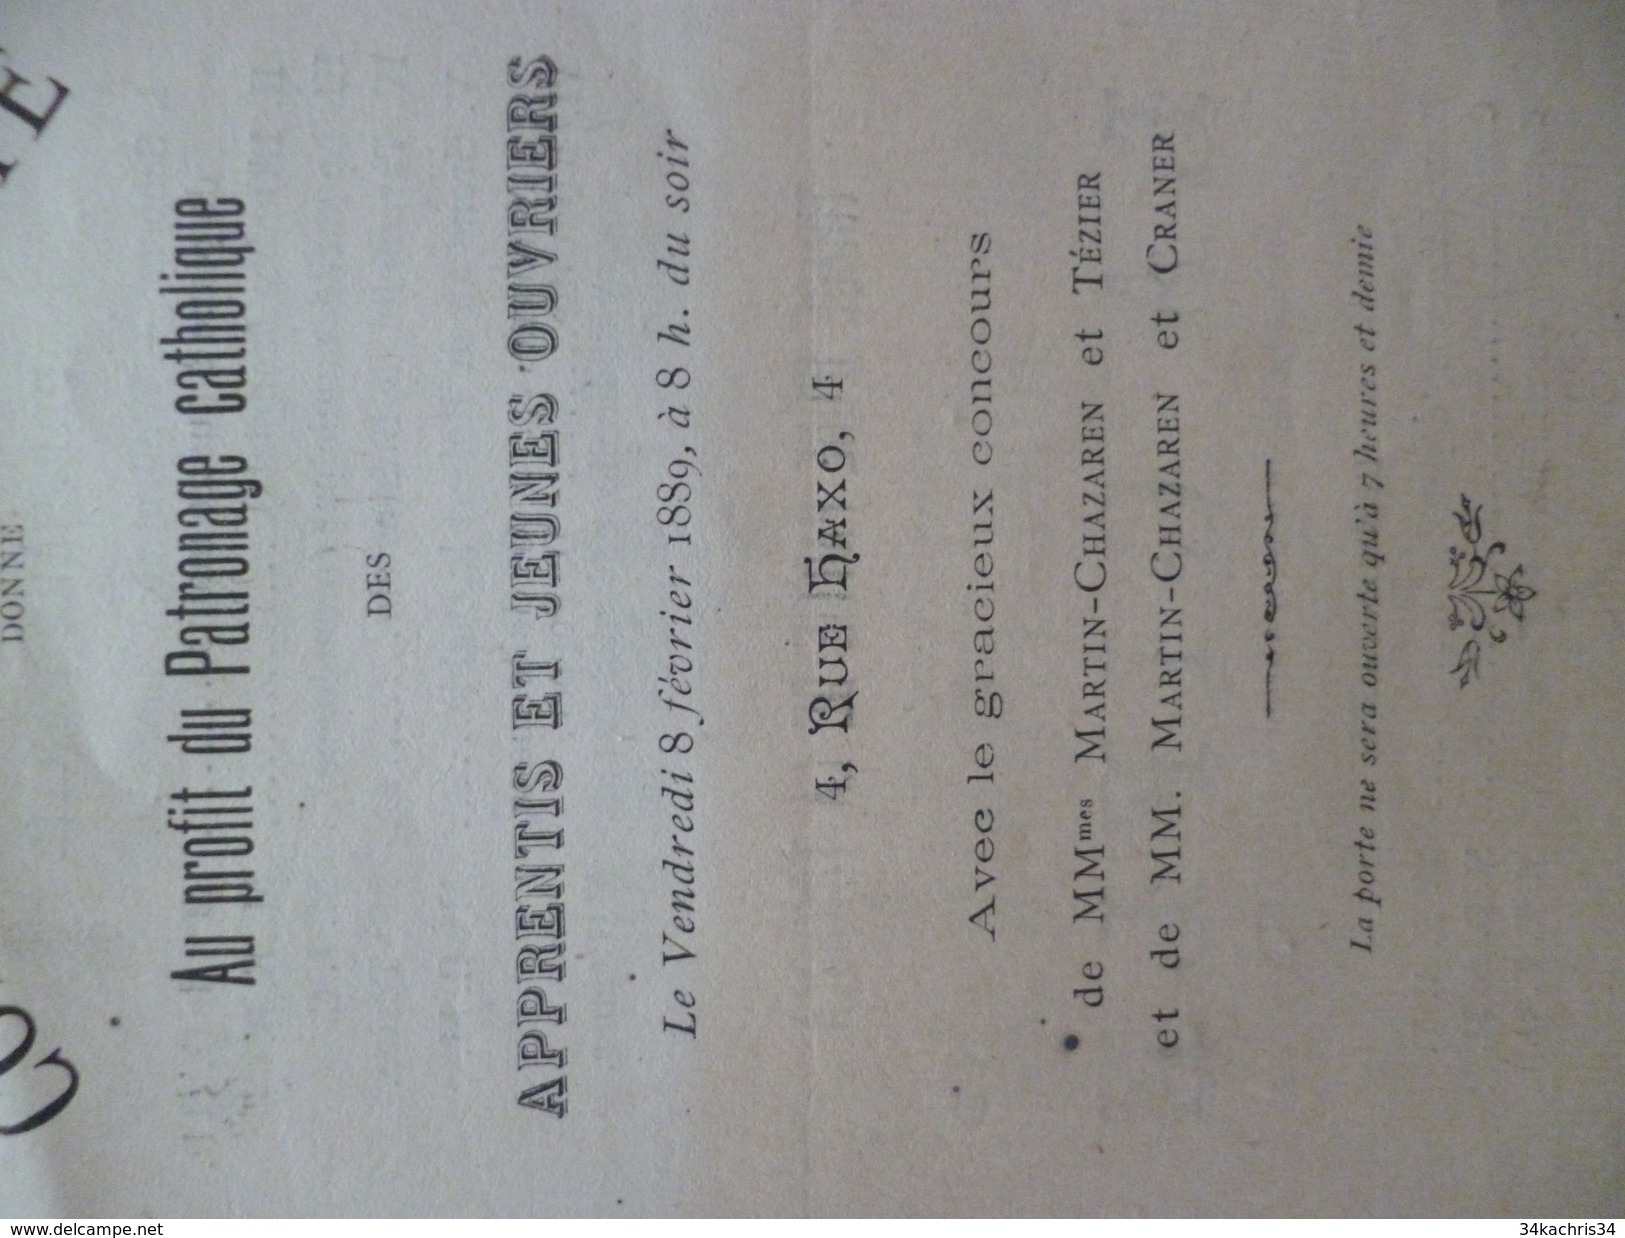 Programme Illustré D'un Dessin Concert De Charité Patronage Catholique 8/02/1889 Grenoble Rue Haxo - Programs